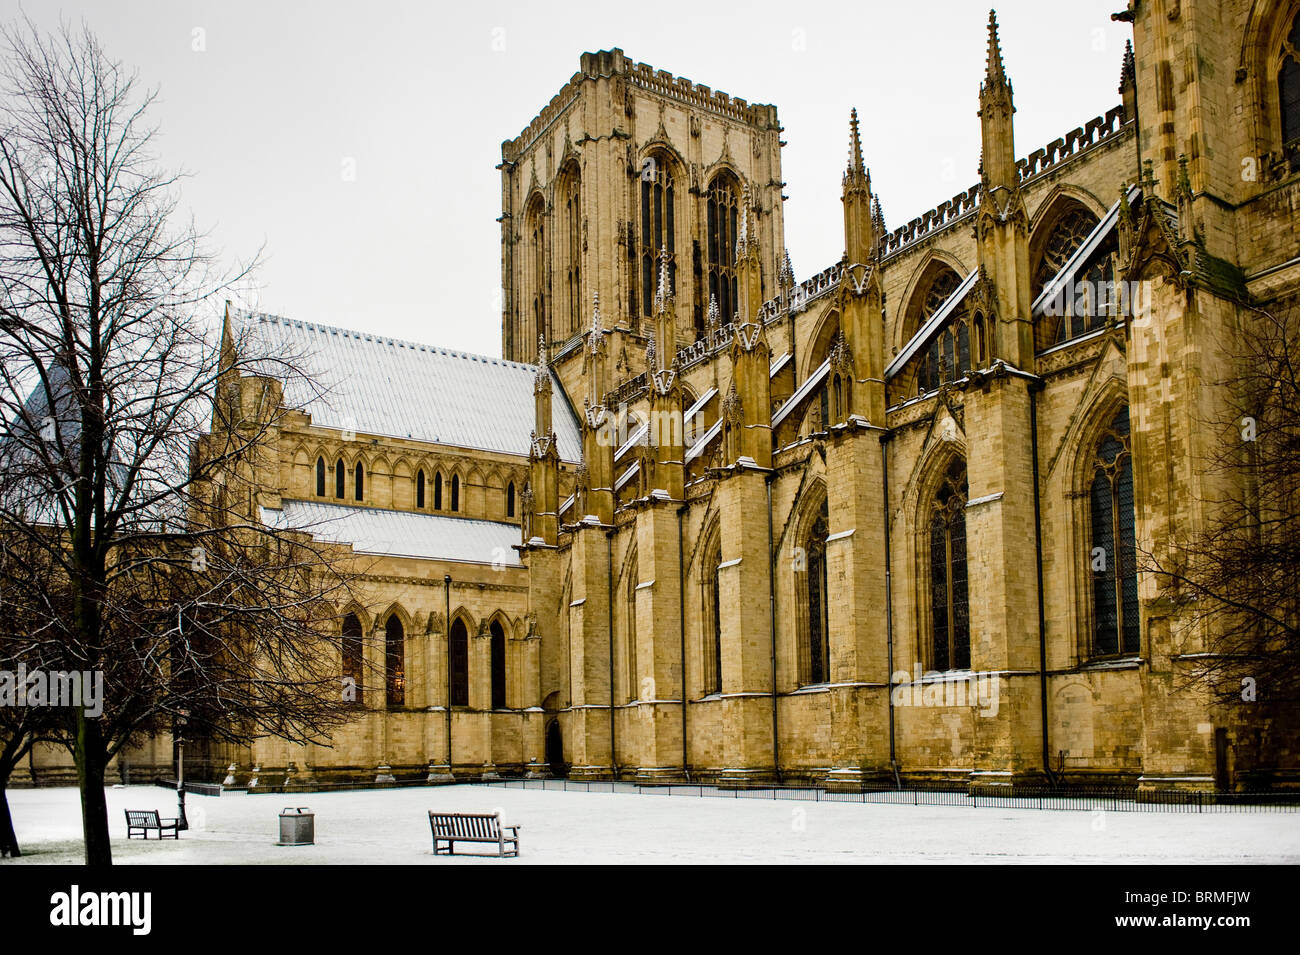 Nördlich des York Minster, von Dean façade Park aus gesehen, im Schnee. North Yorkshire, Großbritannien. Stockfoto